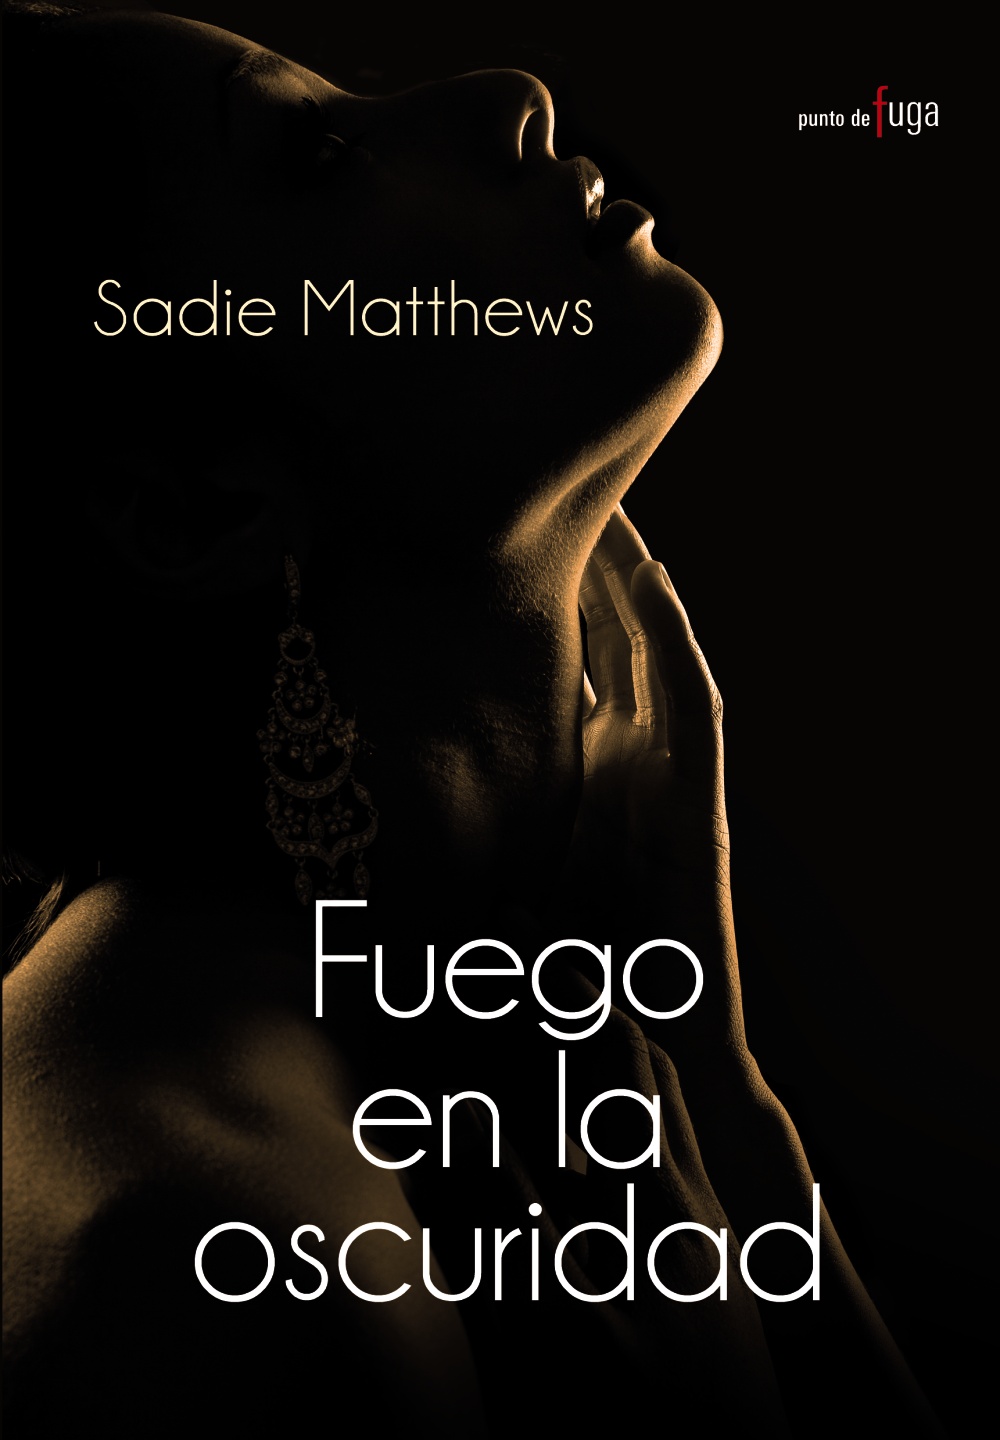 Audiolibro Fuego en la Oscuridad – Sadie Matthews